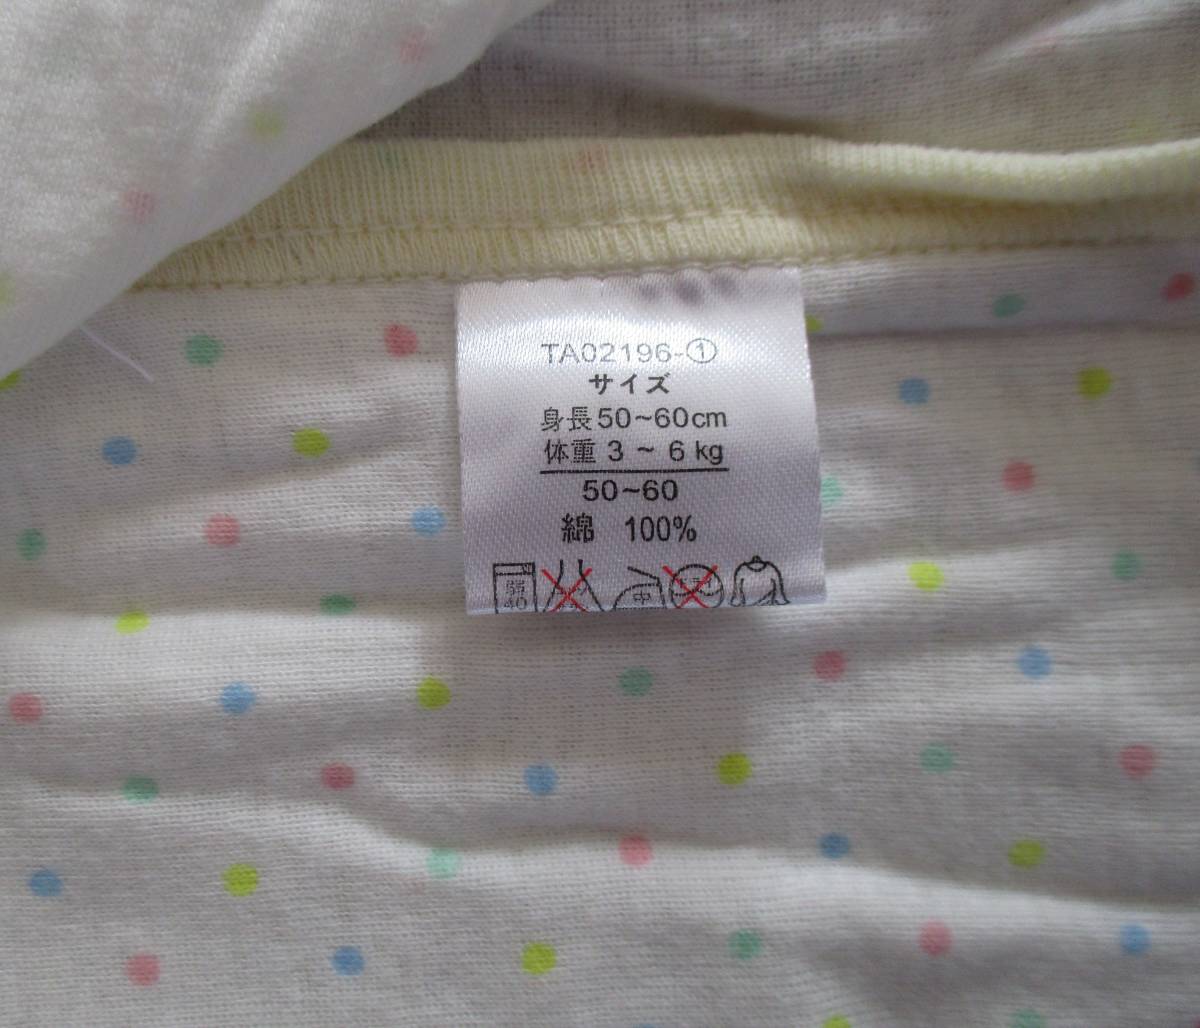  new goods unused newborn baby underwear set 3 sheets set short underwear 50~60cm birth preparation cotton 100% west pine shop 